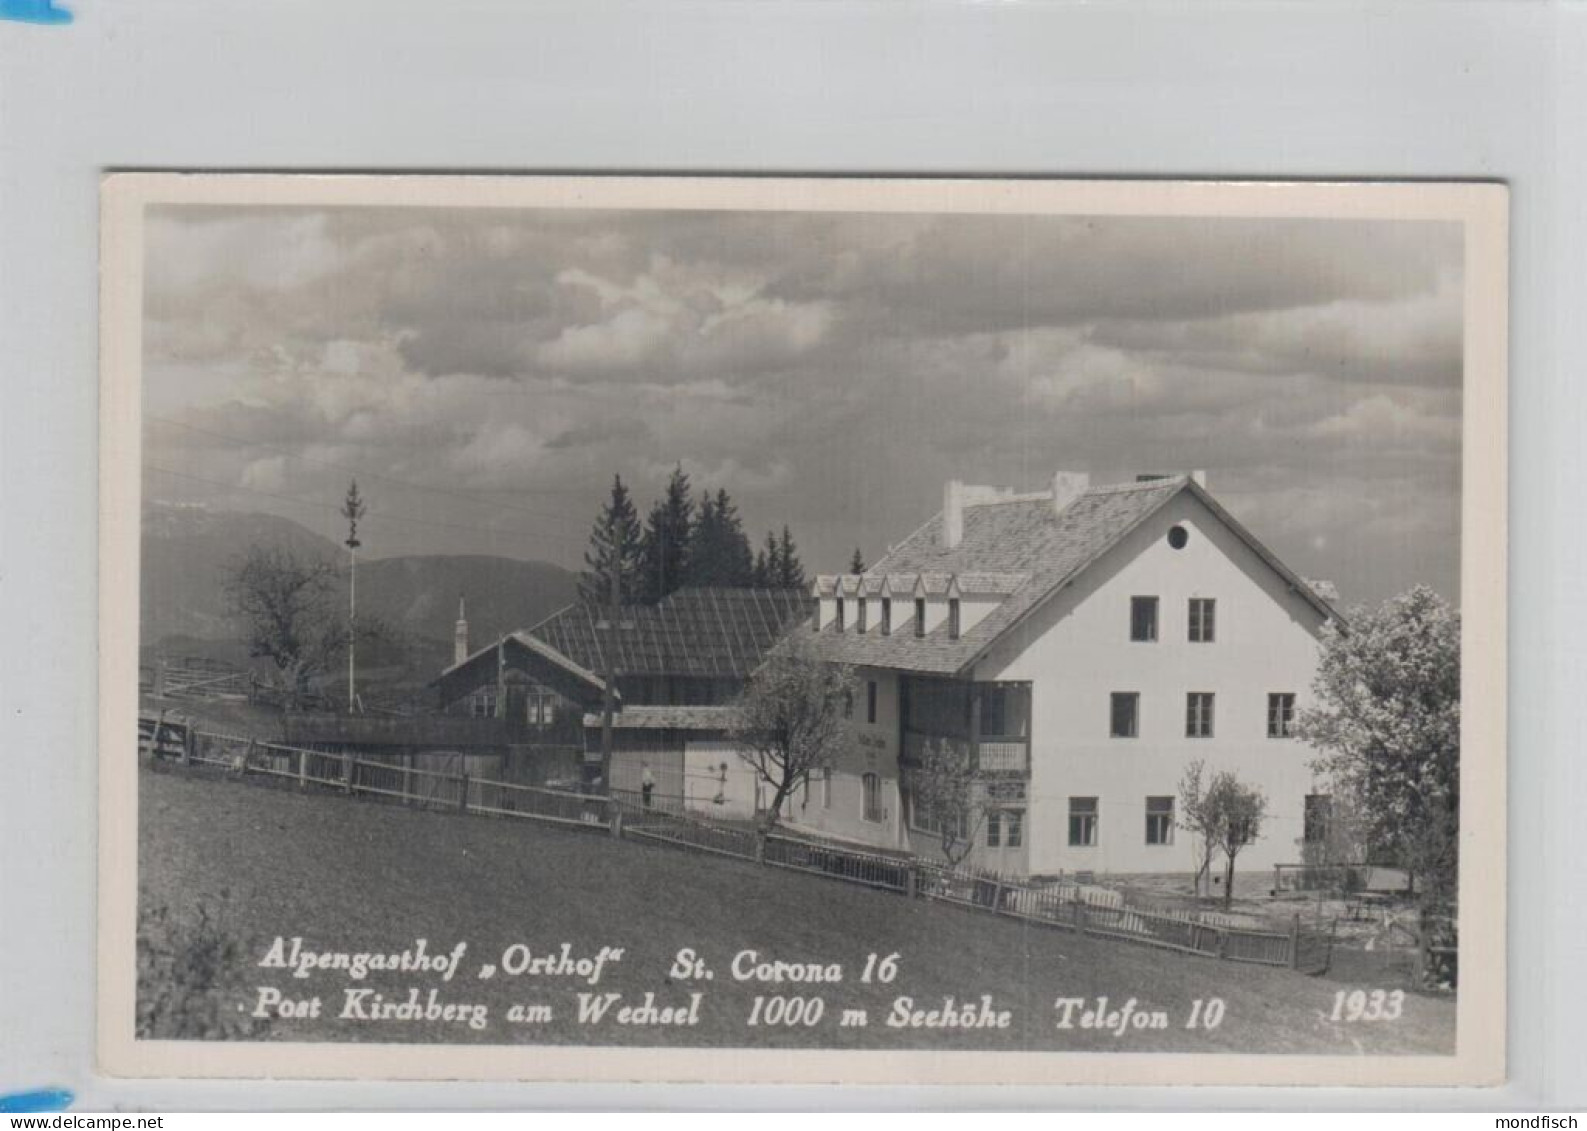 St. Corona - Alpengasthof Orthof 1949 - Wechsel